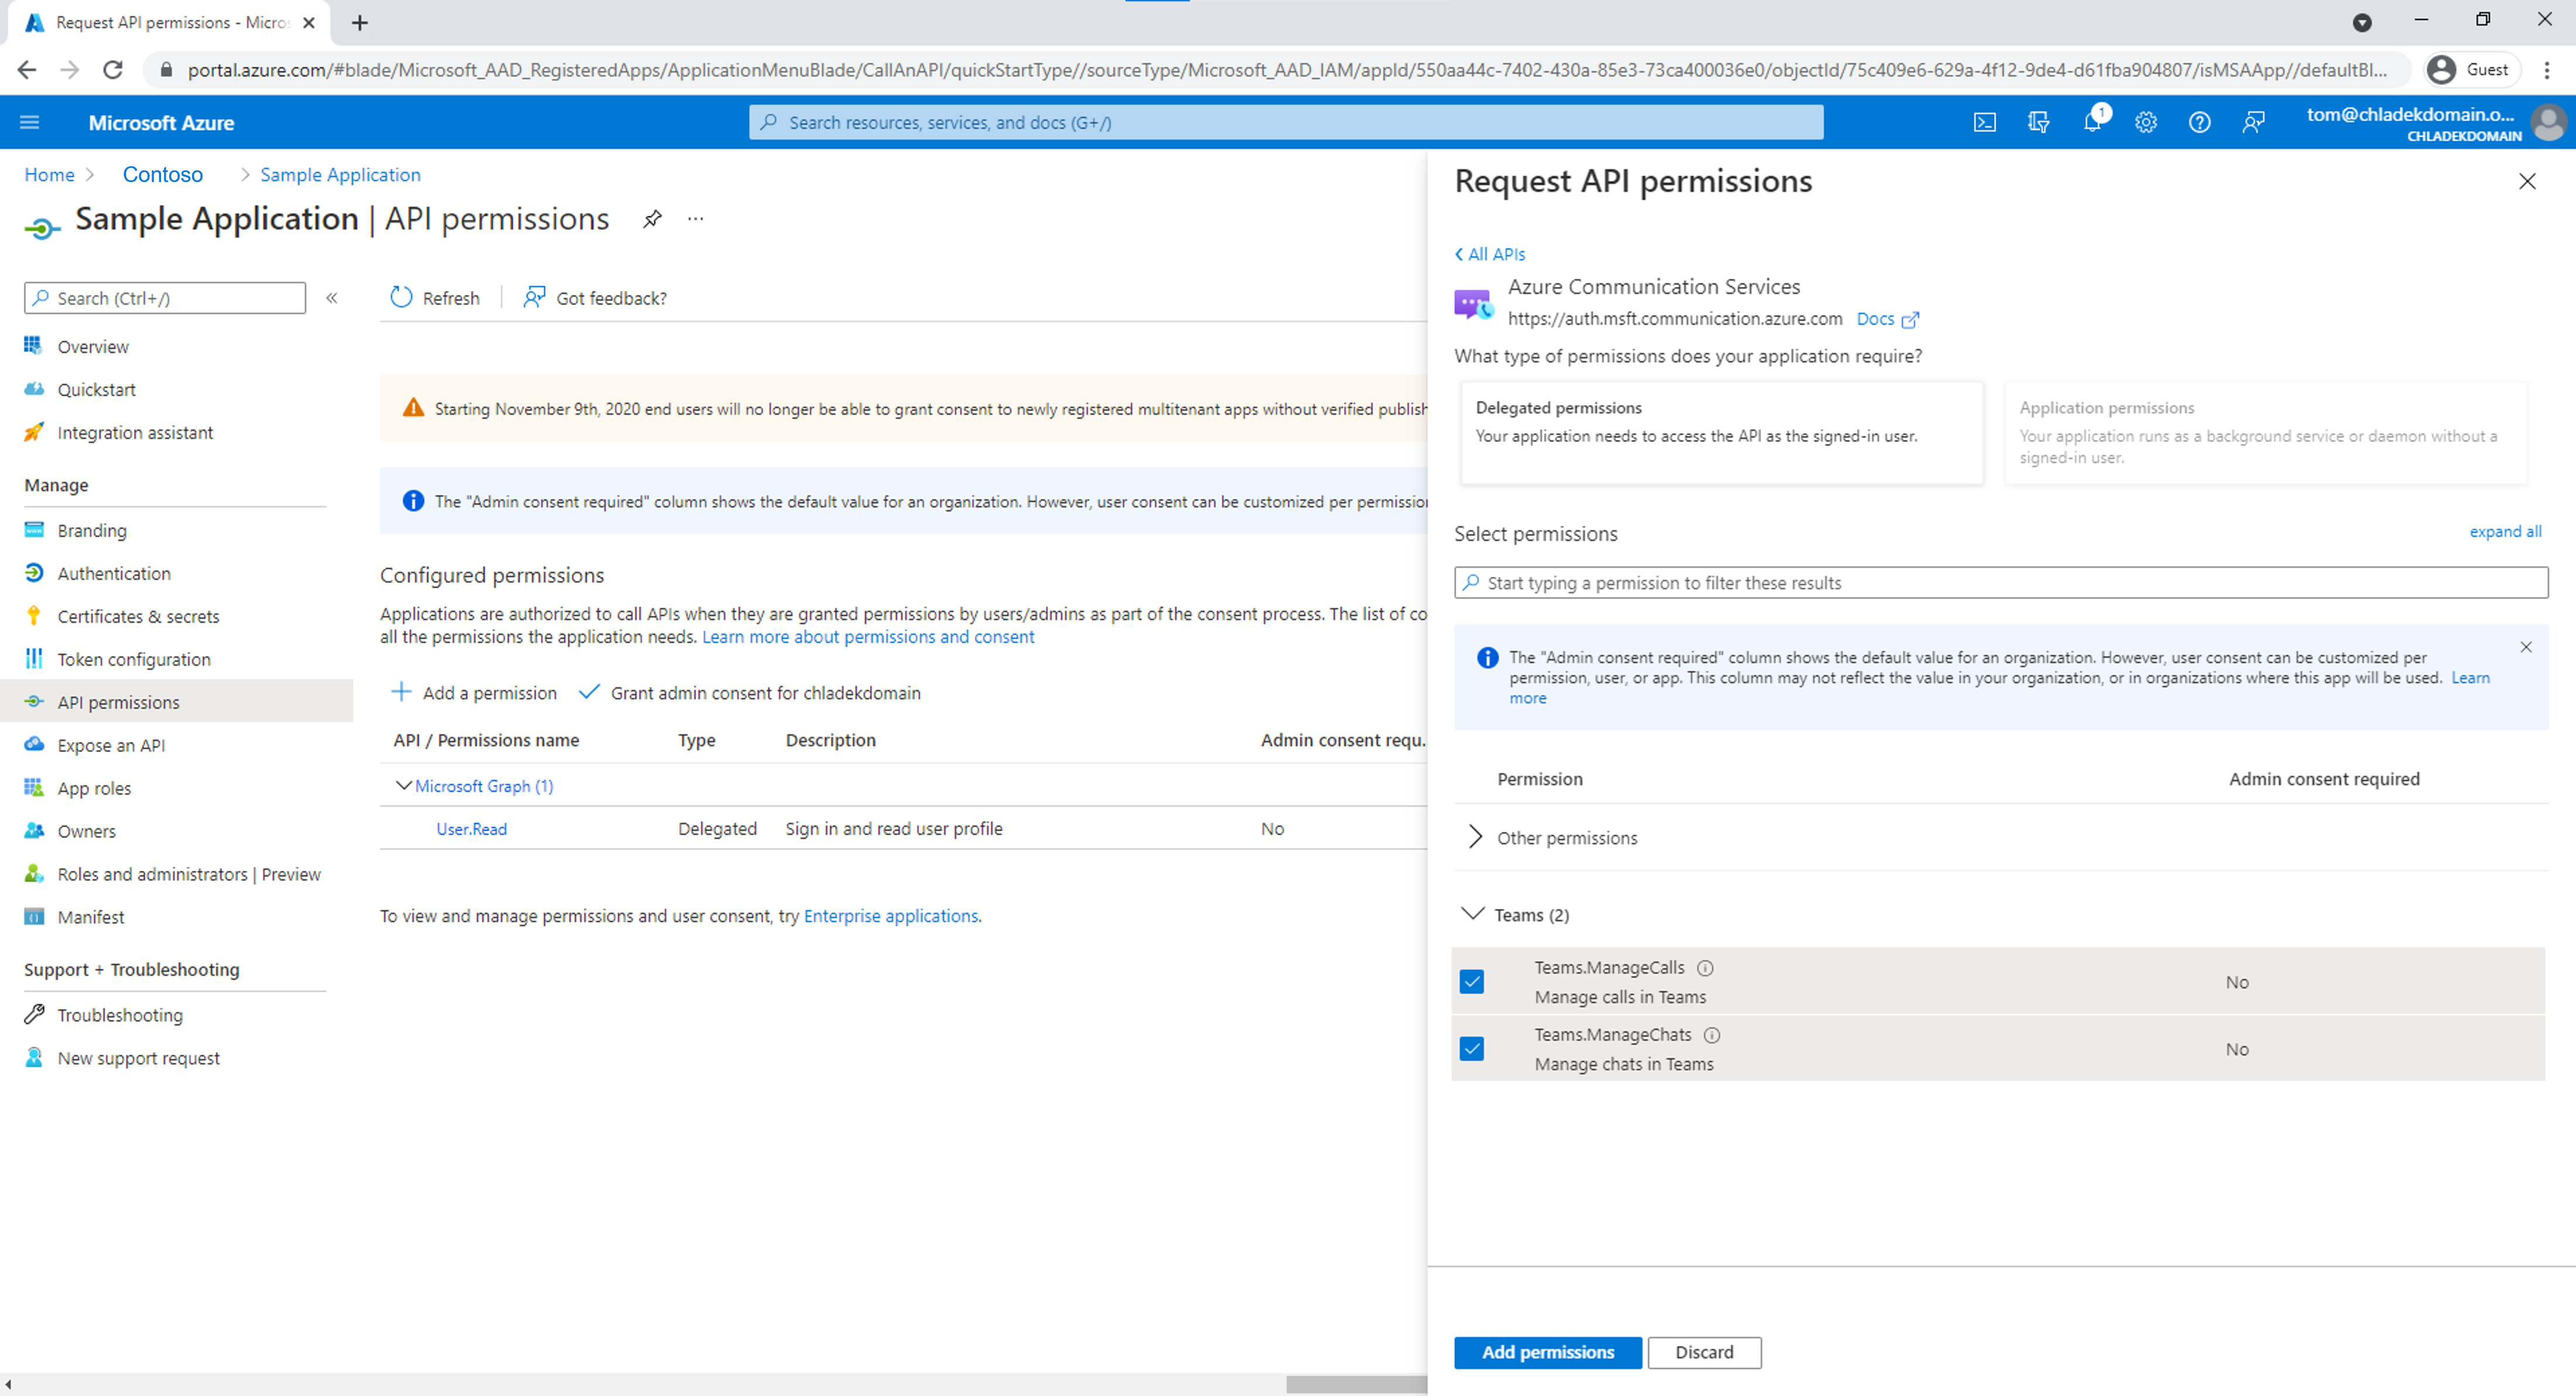 Teams.ManageCalls および Teams.ManageChats アクセス許可を以前の手順で作成した Microsoft Entra アプリケーションに追加します。